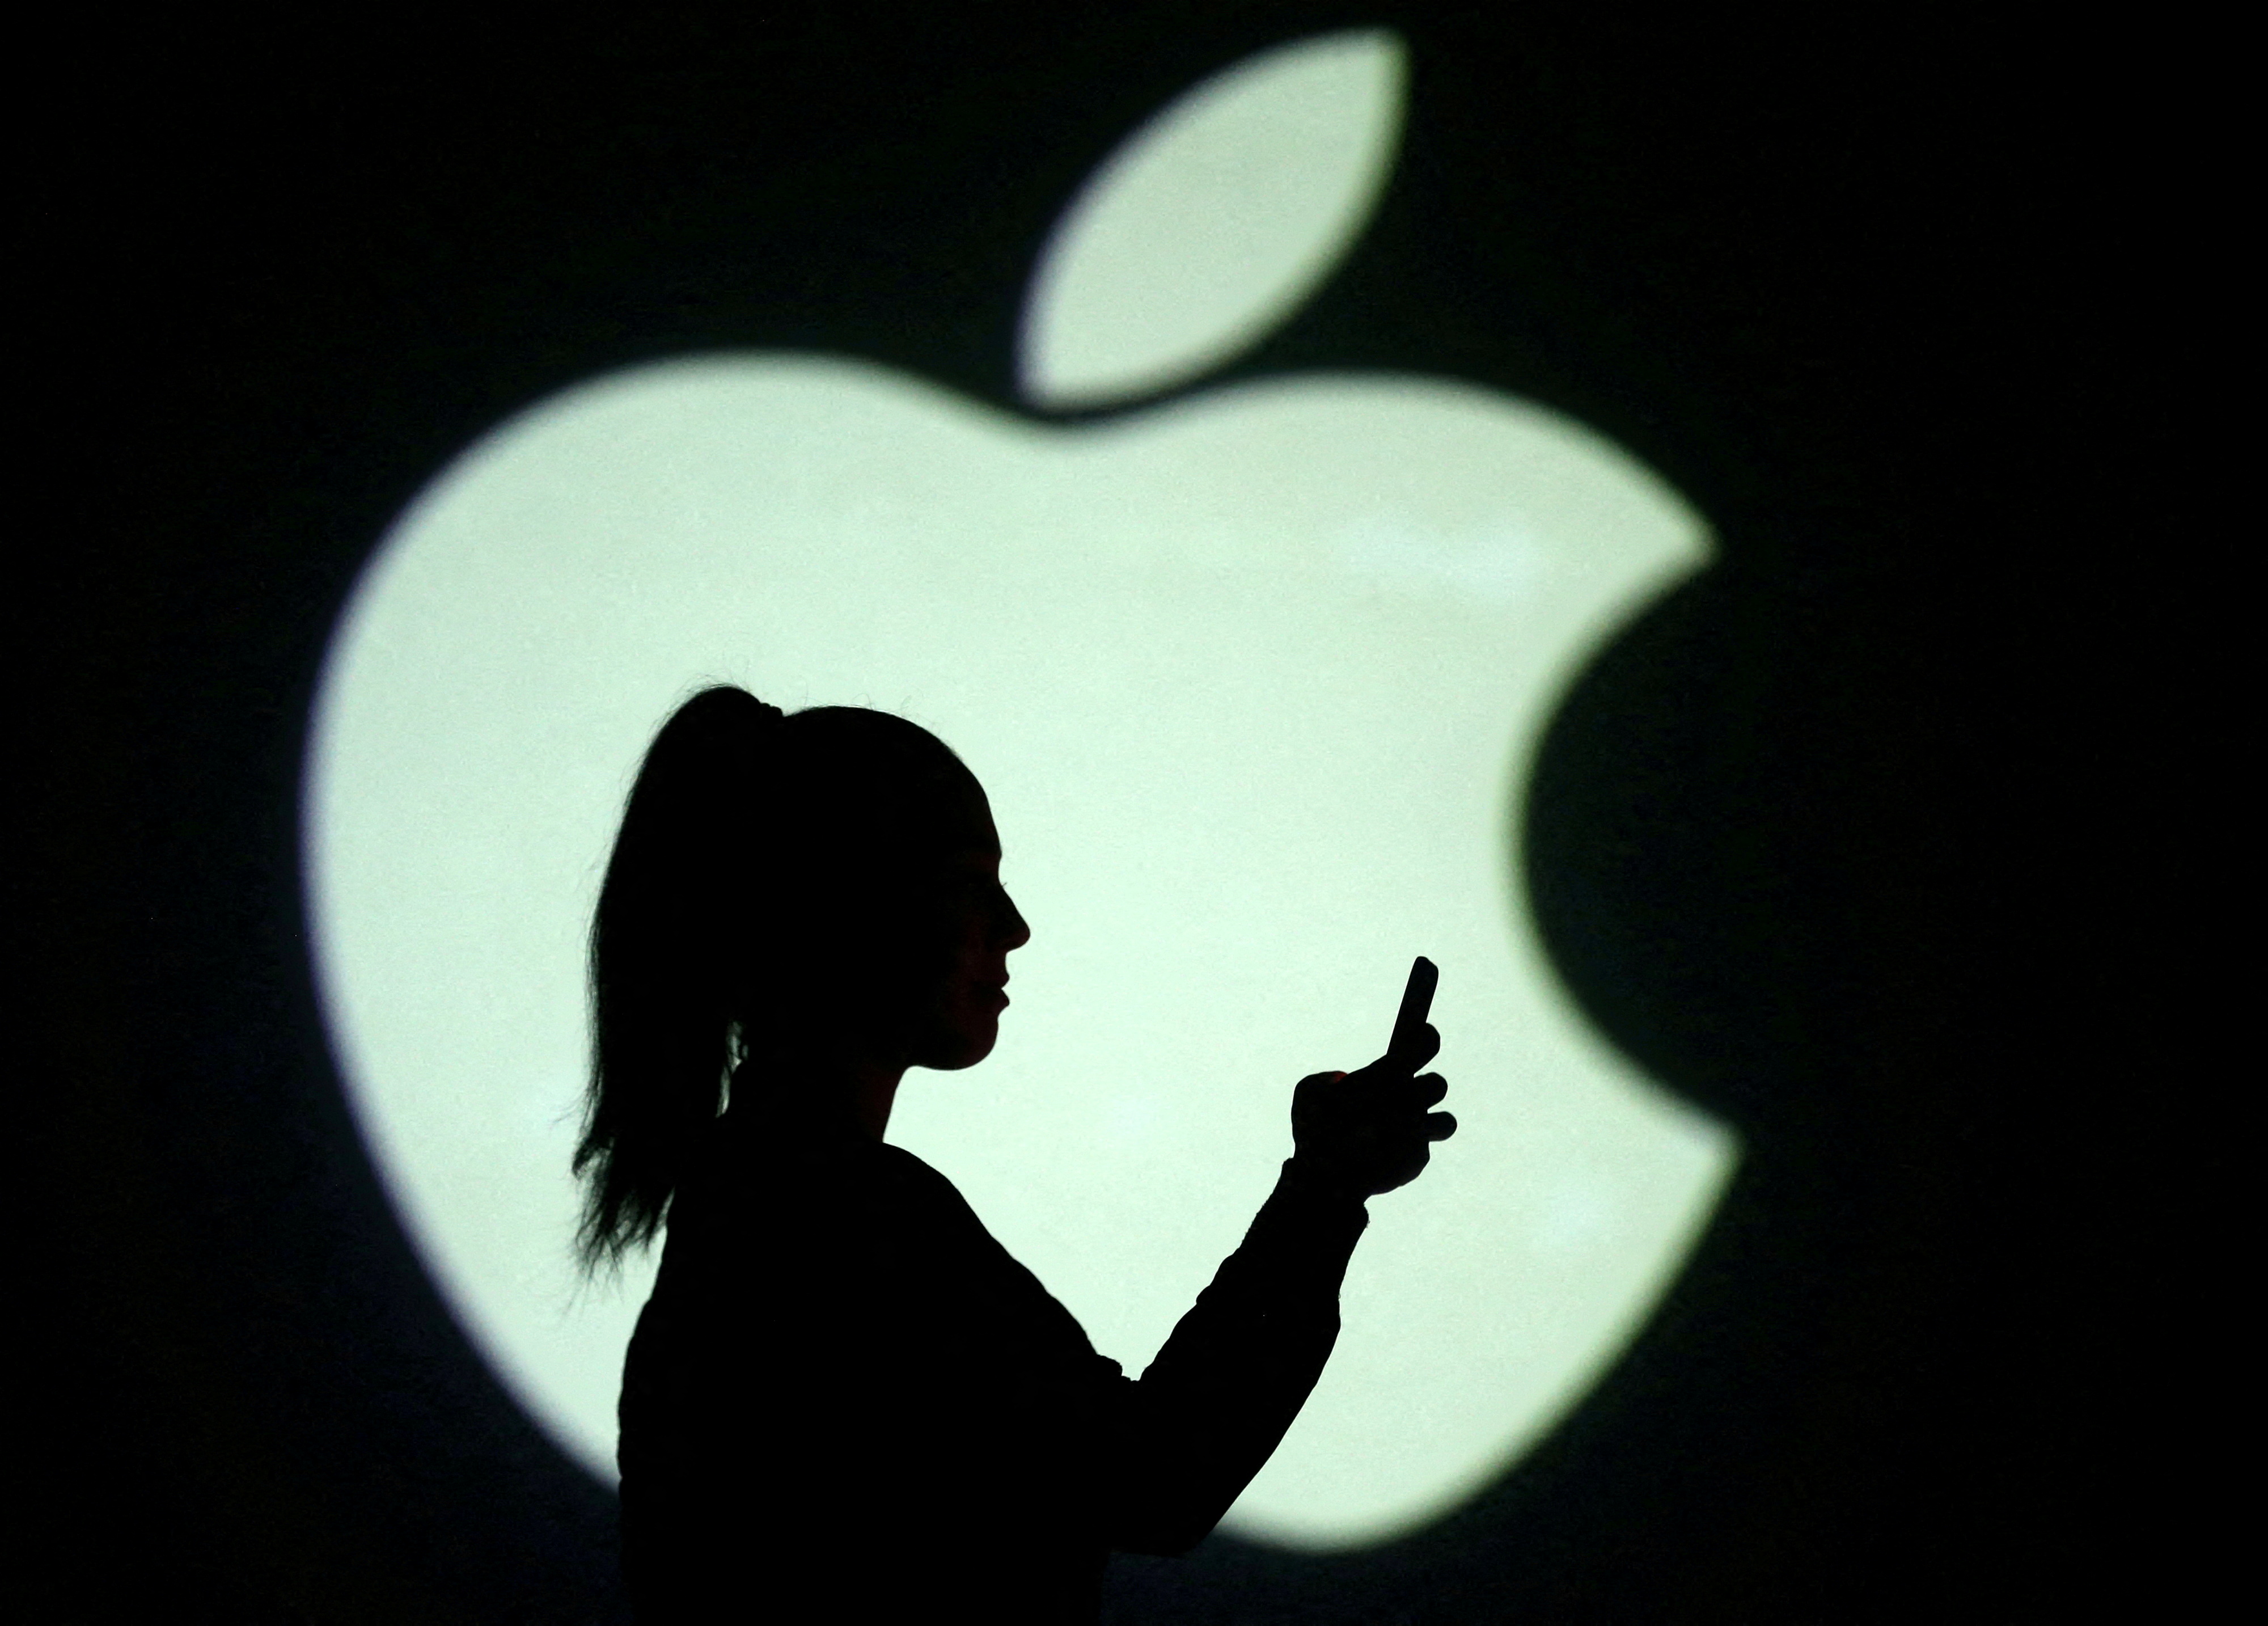 Paiement mobile : l'Union européenne s'attaque au monopole d'Apple Pay